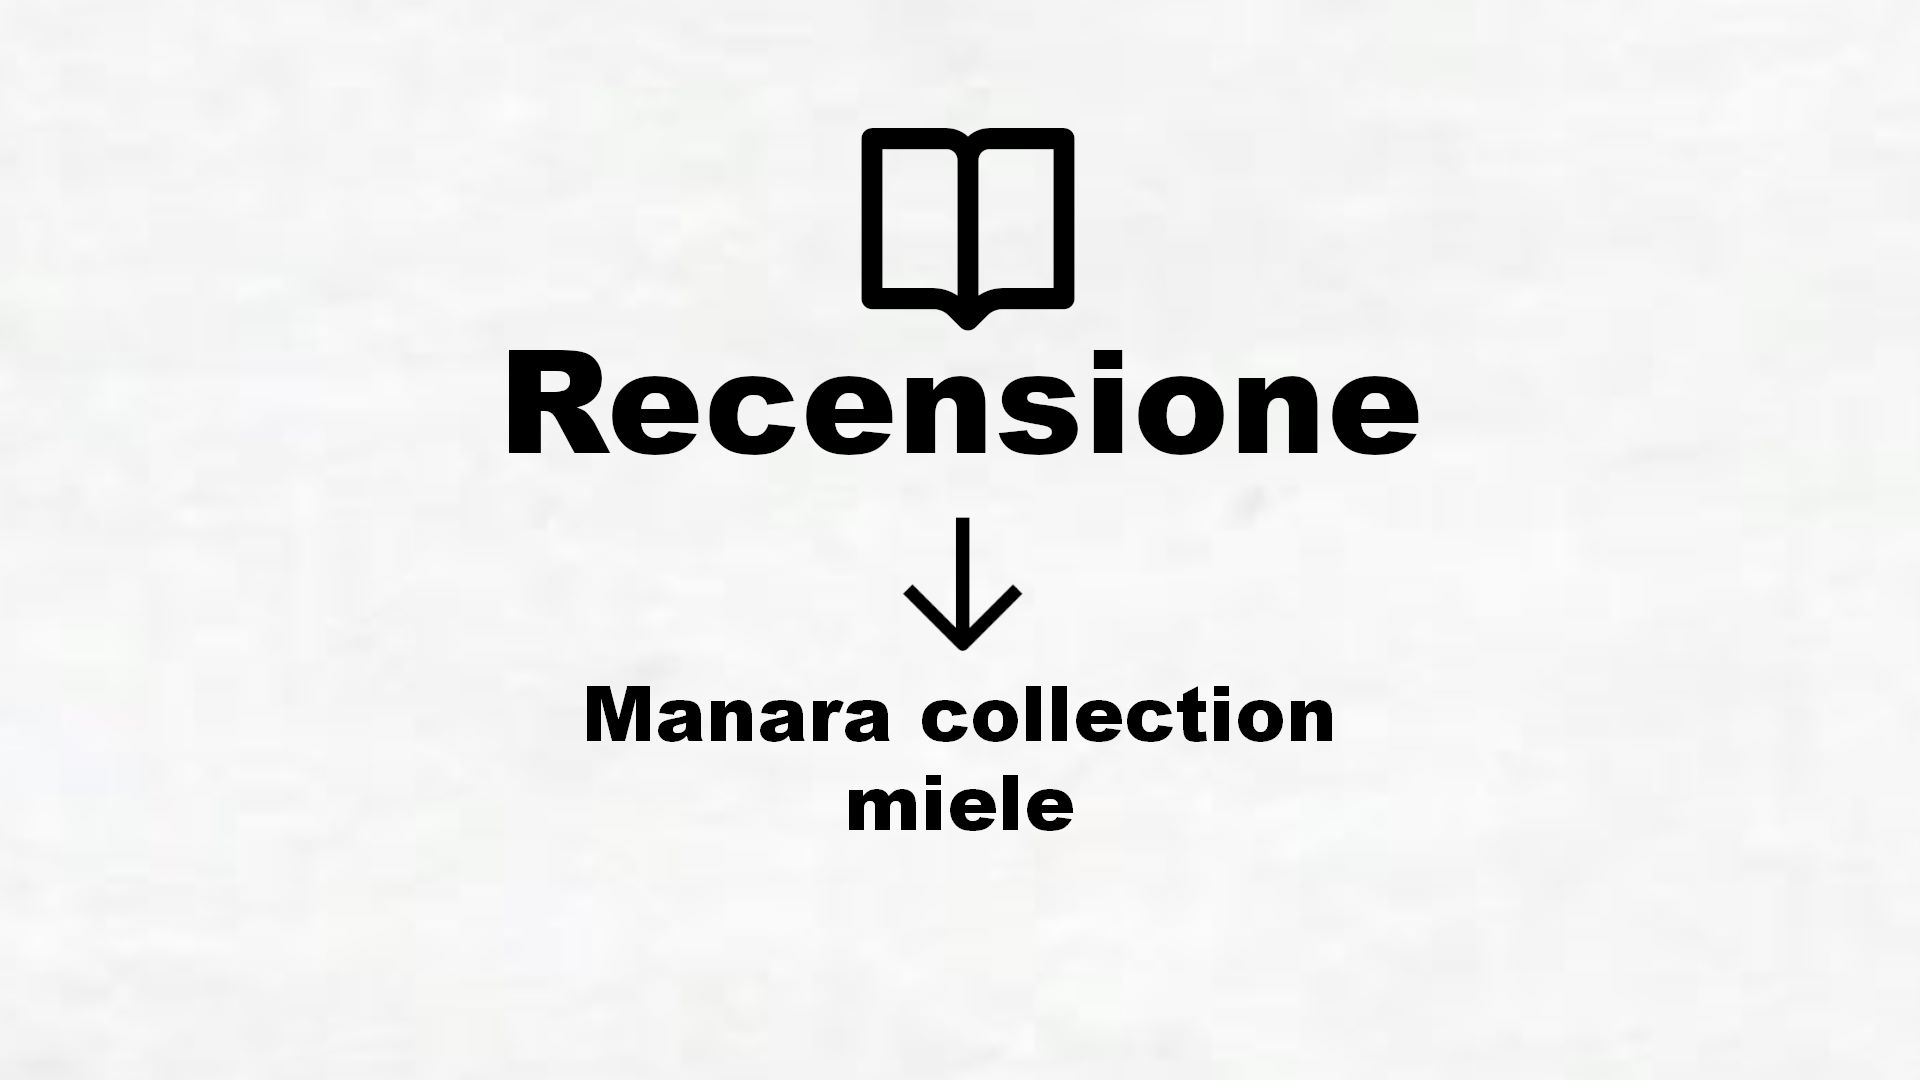 Manara collection miele – Recensione Libro